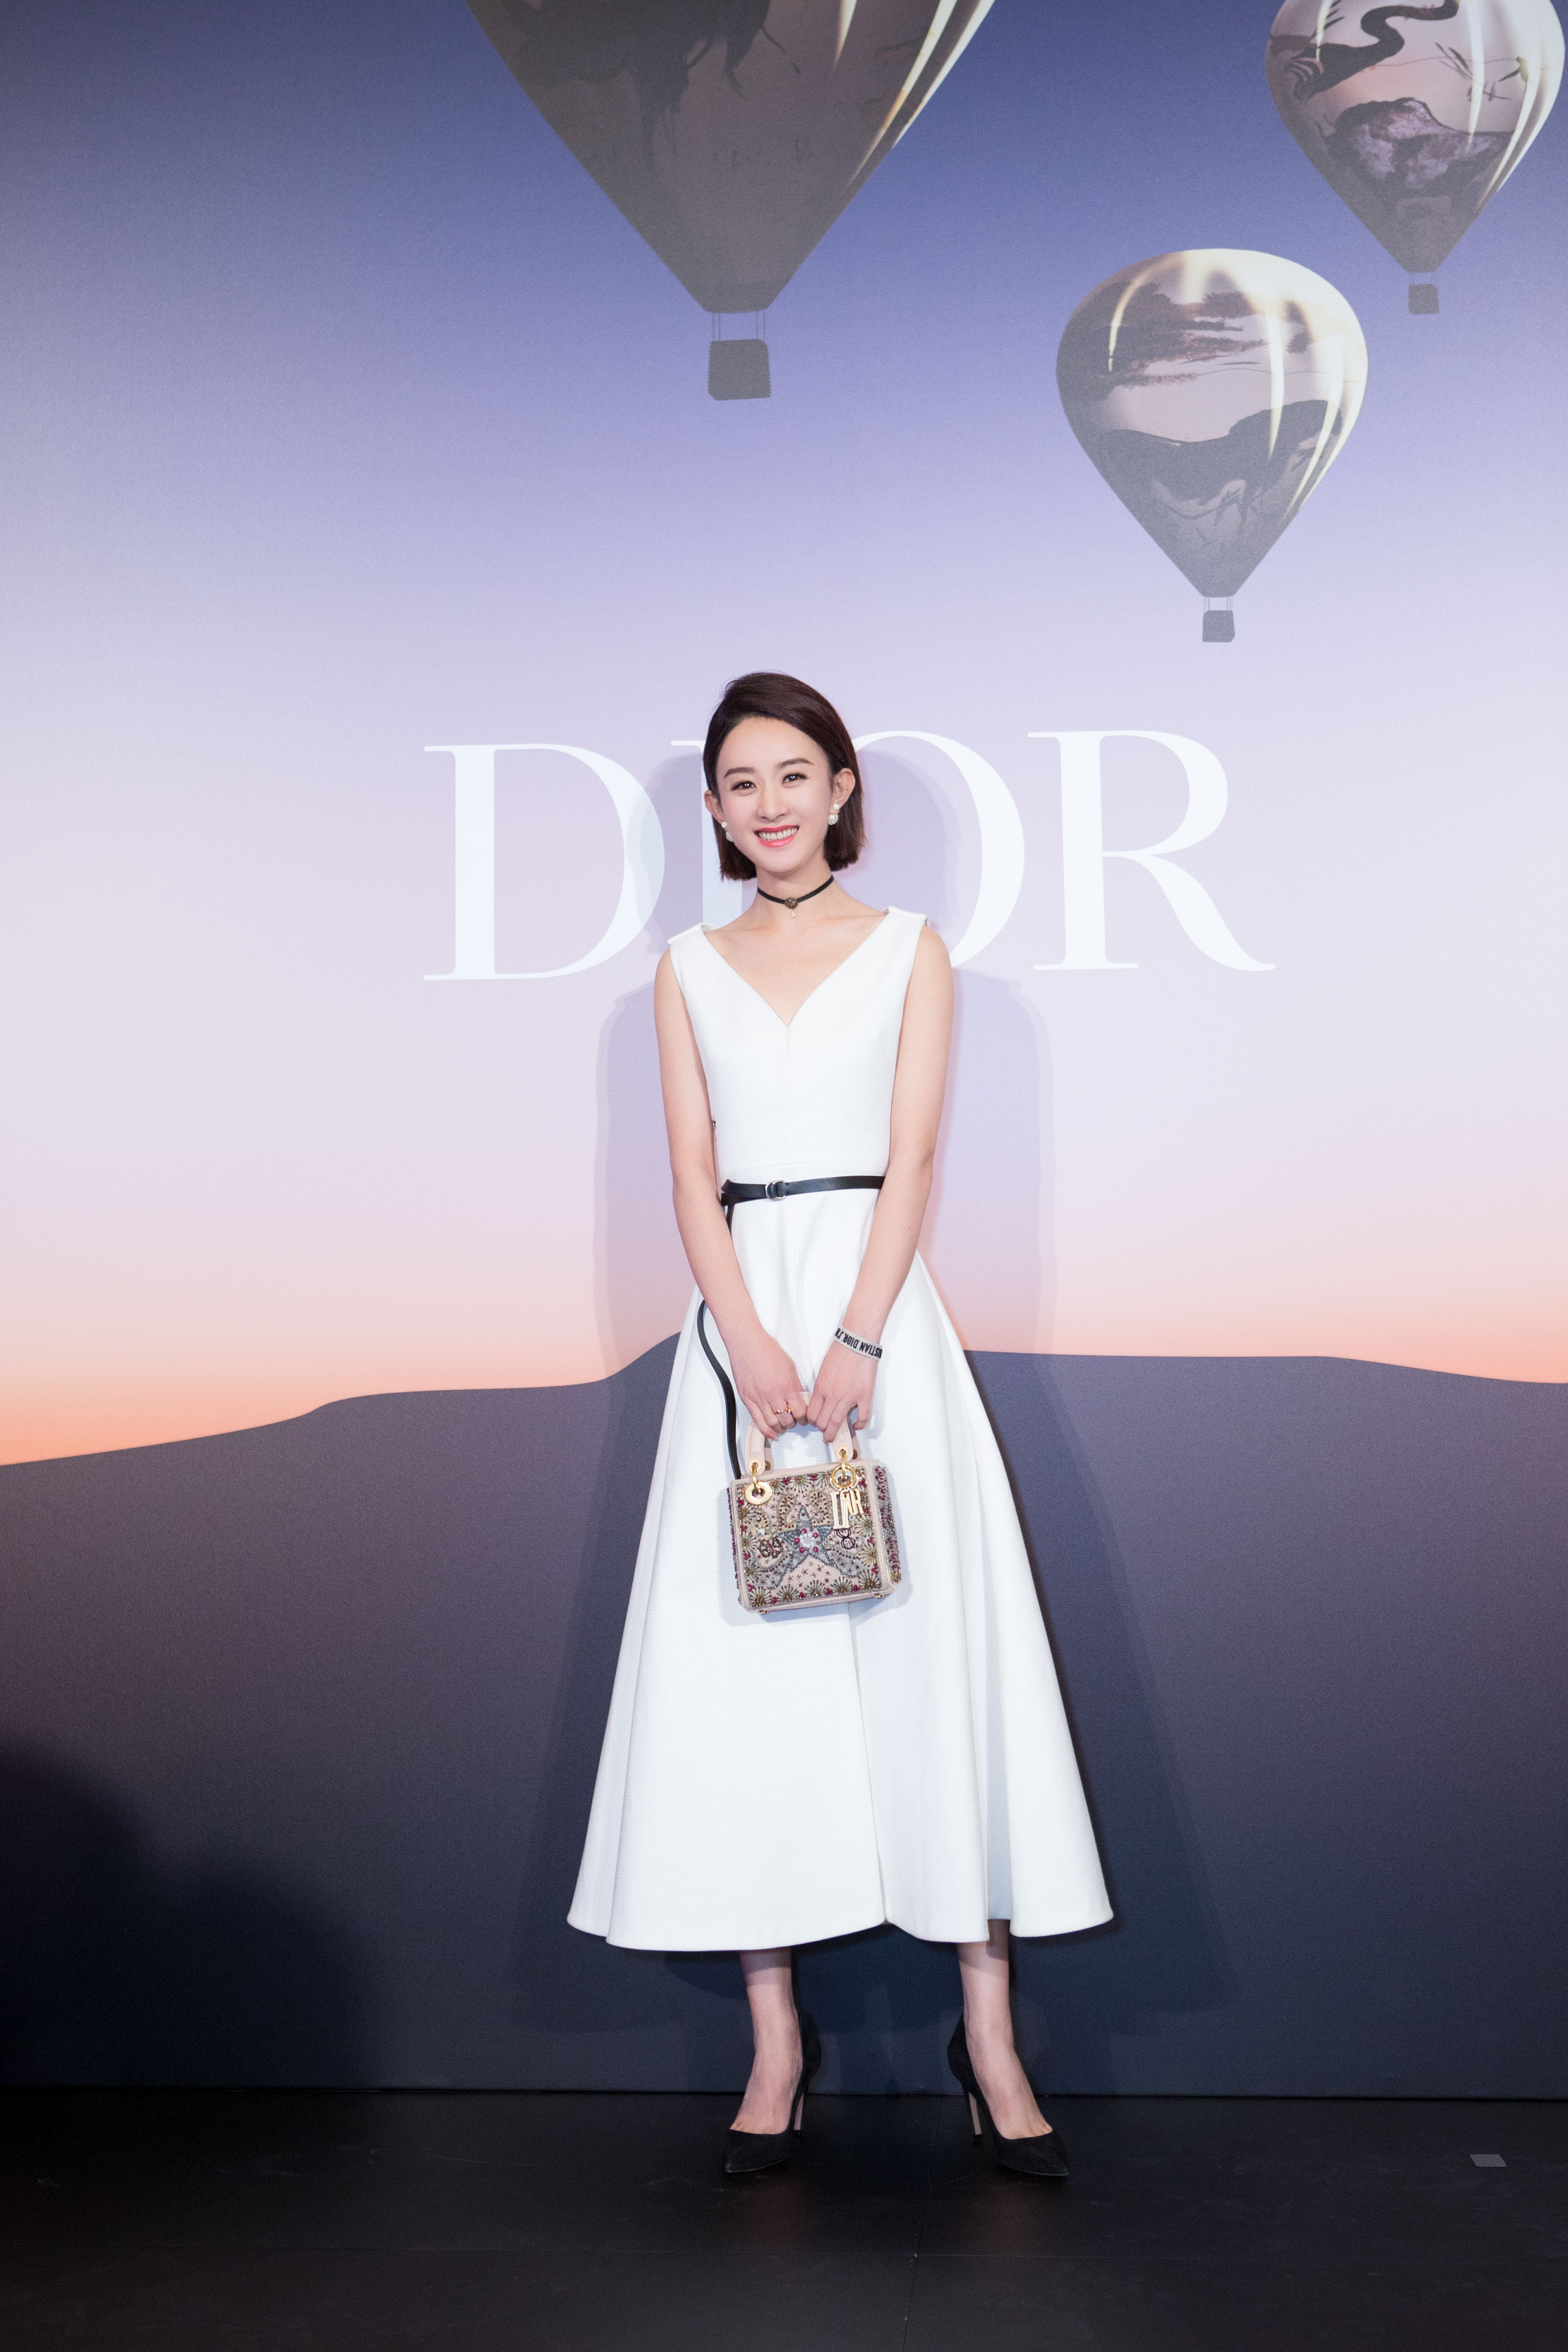 Nữ diễn viên Triệu Lệ Dĩnh xuất hiện đầy tươi trẻ so với tuổi 30 của mình. Chiếc túi Lady Dior bằng da bê đính ngọc trai làm nên điểm nhấn sang trọng và đầy bắt mắt cho bộ trang phục mang phong cách tối giản của cô.